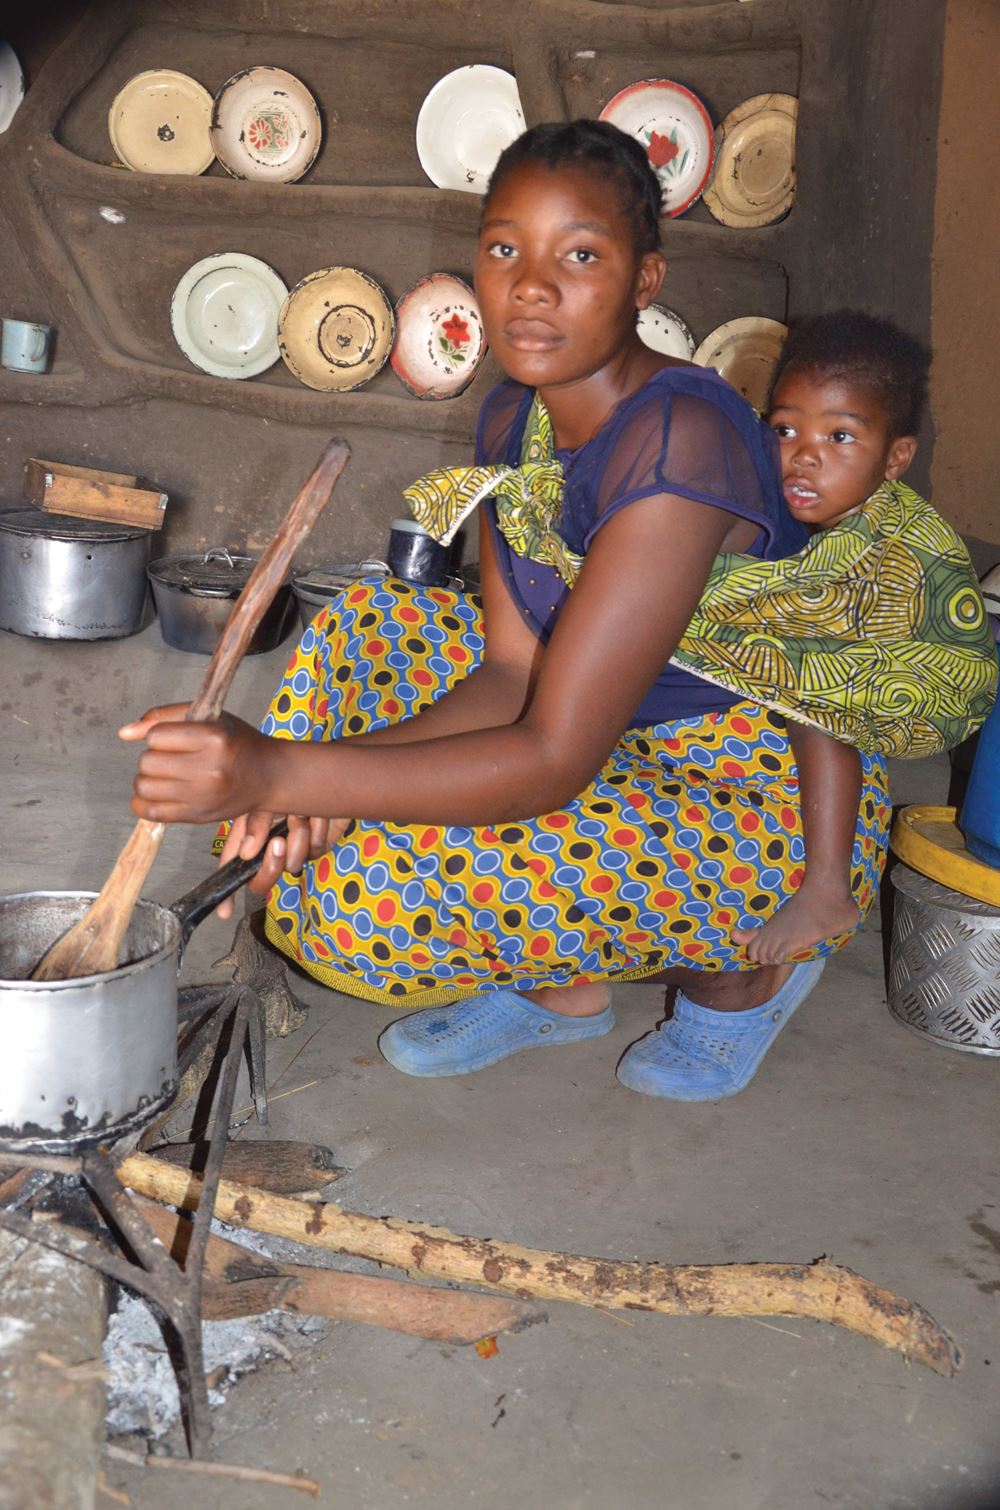 Mädchen mit Baby beim Kochen (Quelle: Kindernothilfe Luxembourg)